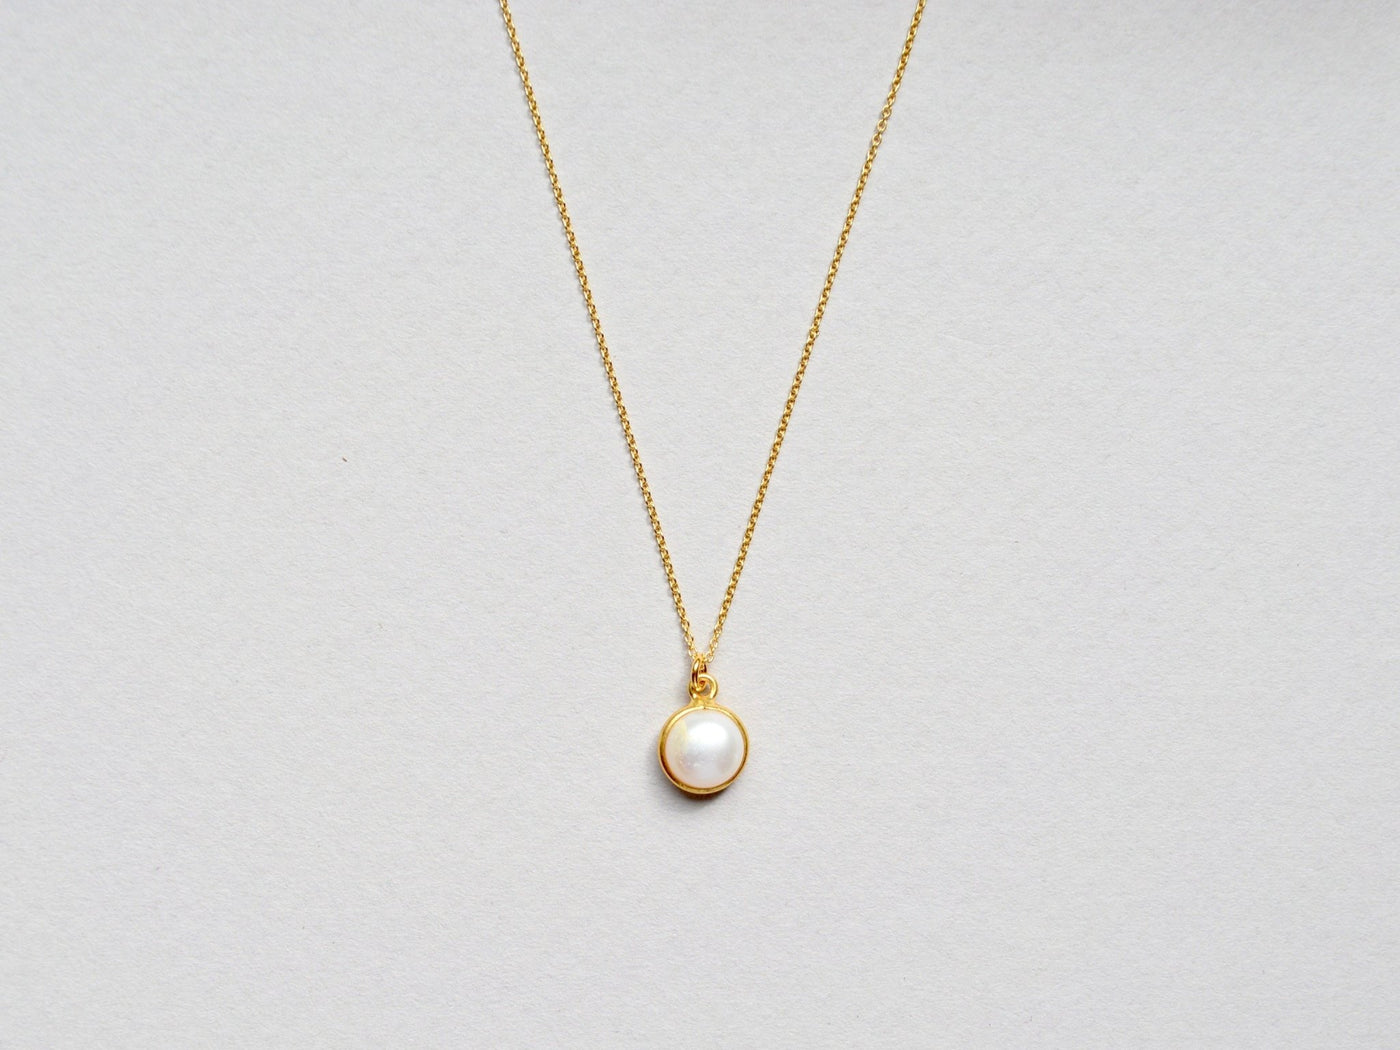 Pearl Dots: Bezaubernde Perlenkette vergoldet - Mia&Martha by Katja Schmalen